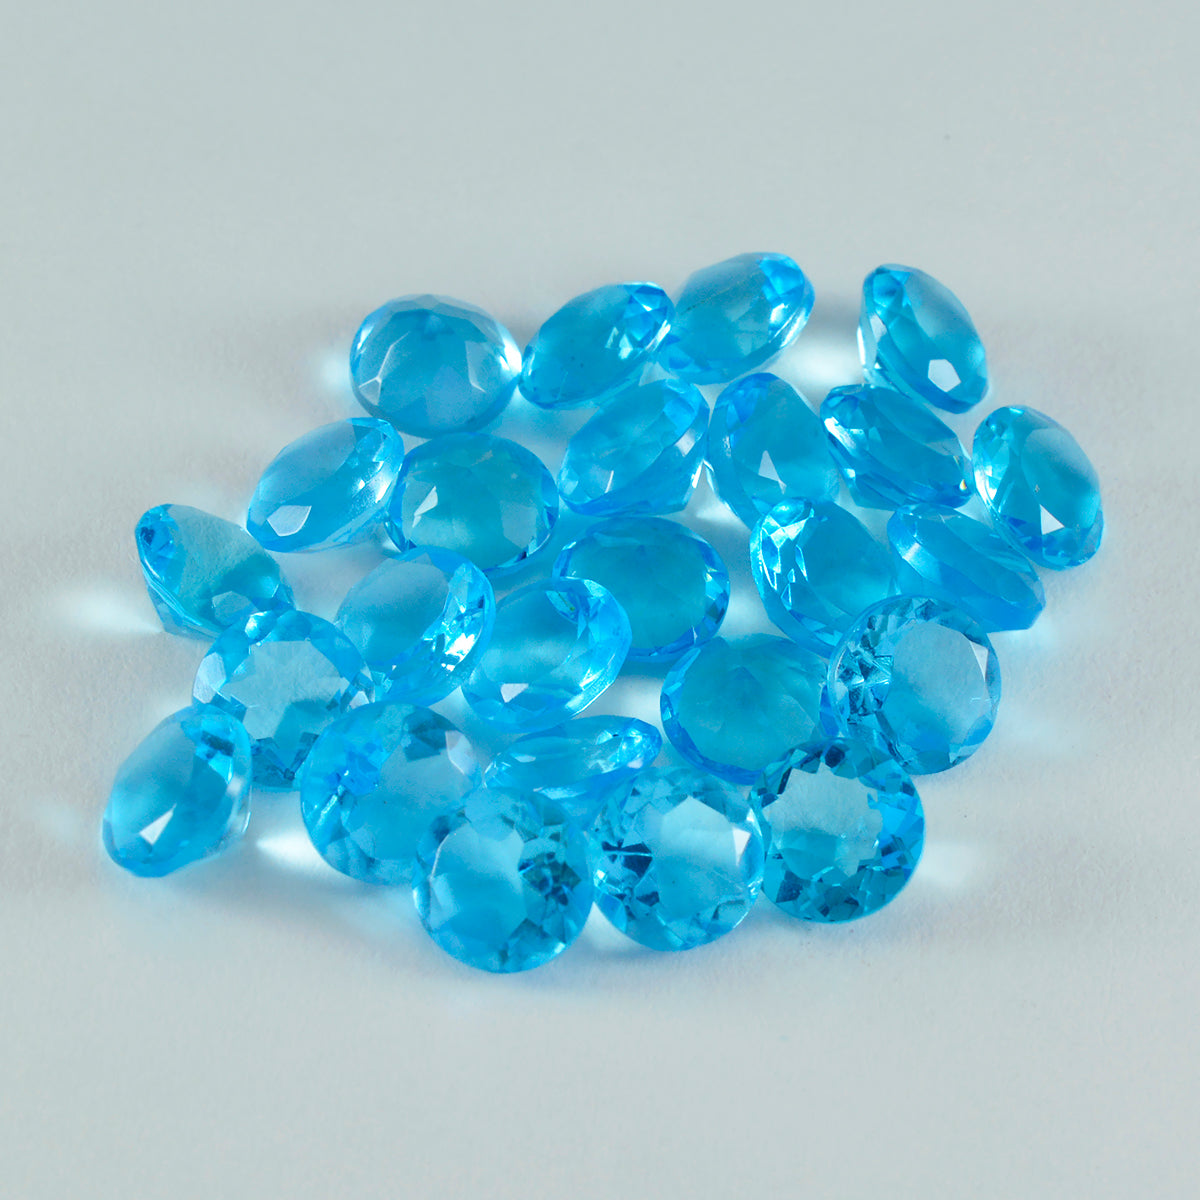 Riyogems 1pc topaze bleue cz facettes 6x6mm forme ronde beauté qualité pierres précieuses en vrac